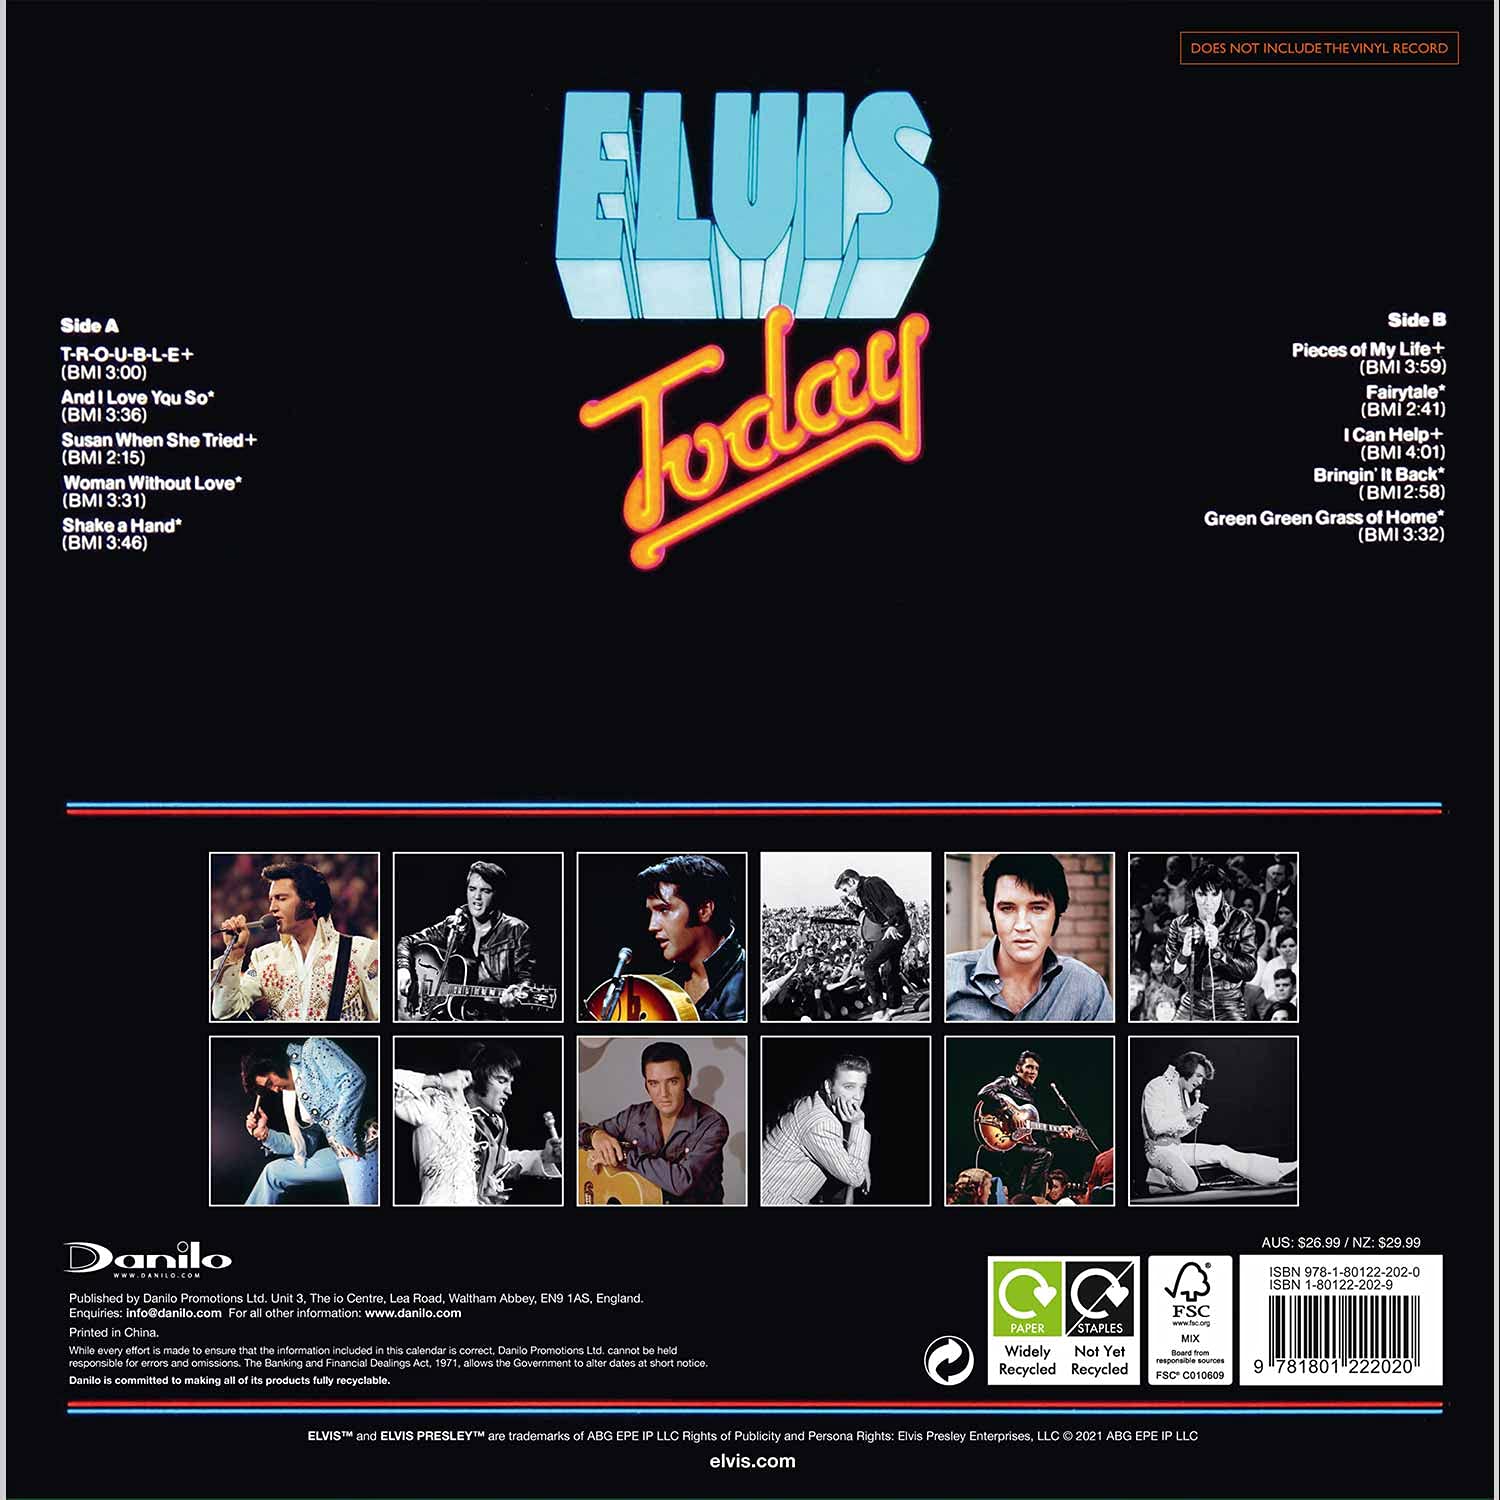 엘비스 프레슬리 (Elvis Presley) - 2022년 벽걸이 캘린더 오피셜 콜렉터스 에디션 - 레코드 슬리브 캘린더 (The Official Elvis Presley Collector's Edition Record Sleeve Calendar 2022) 